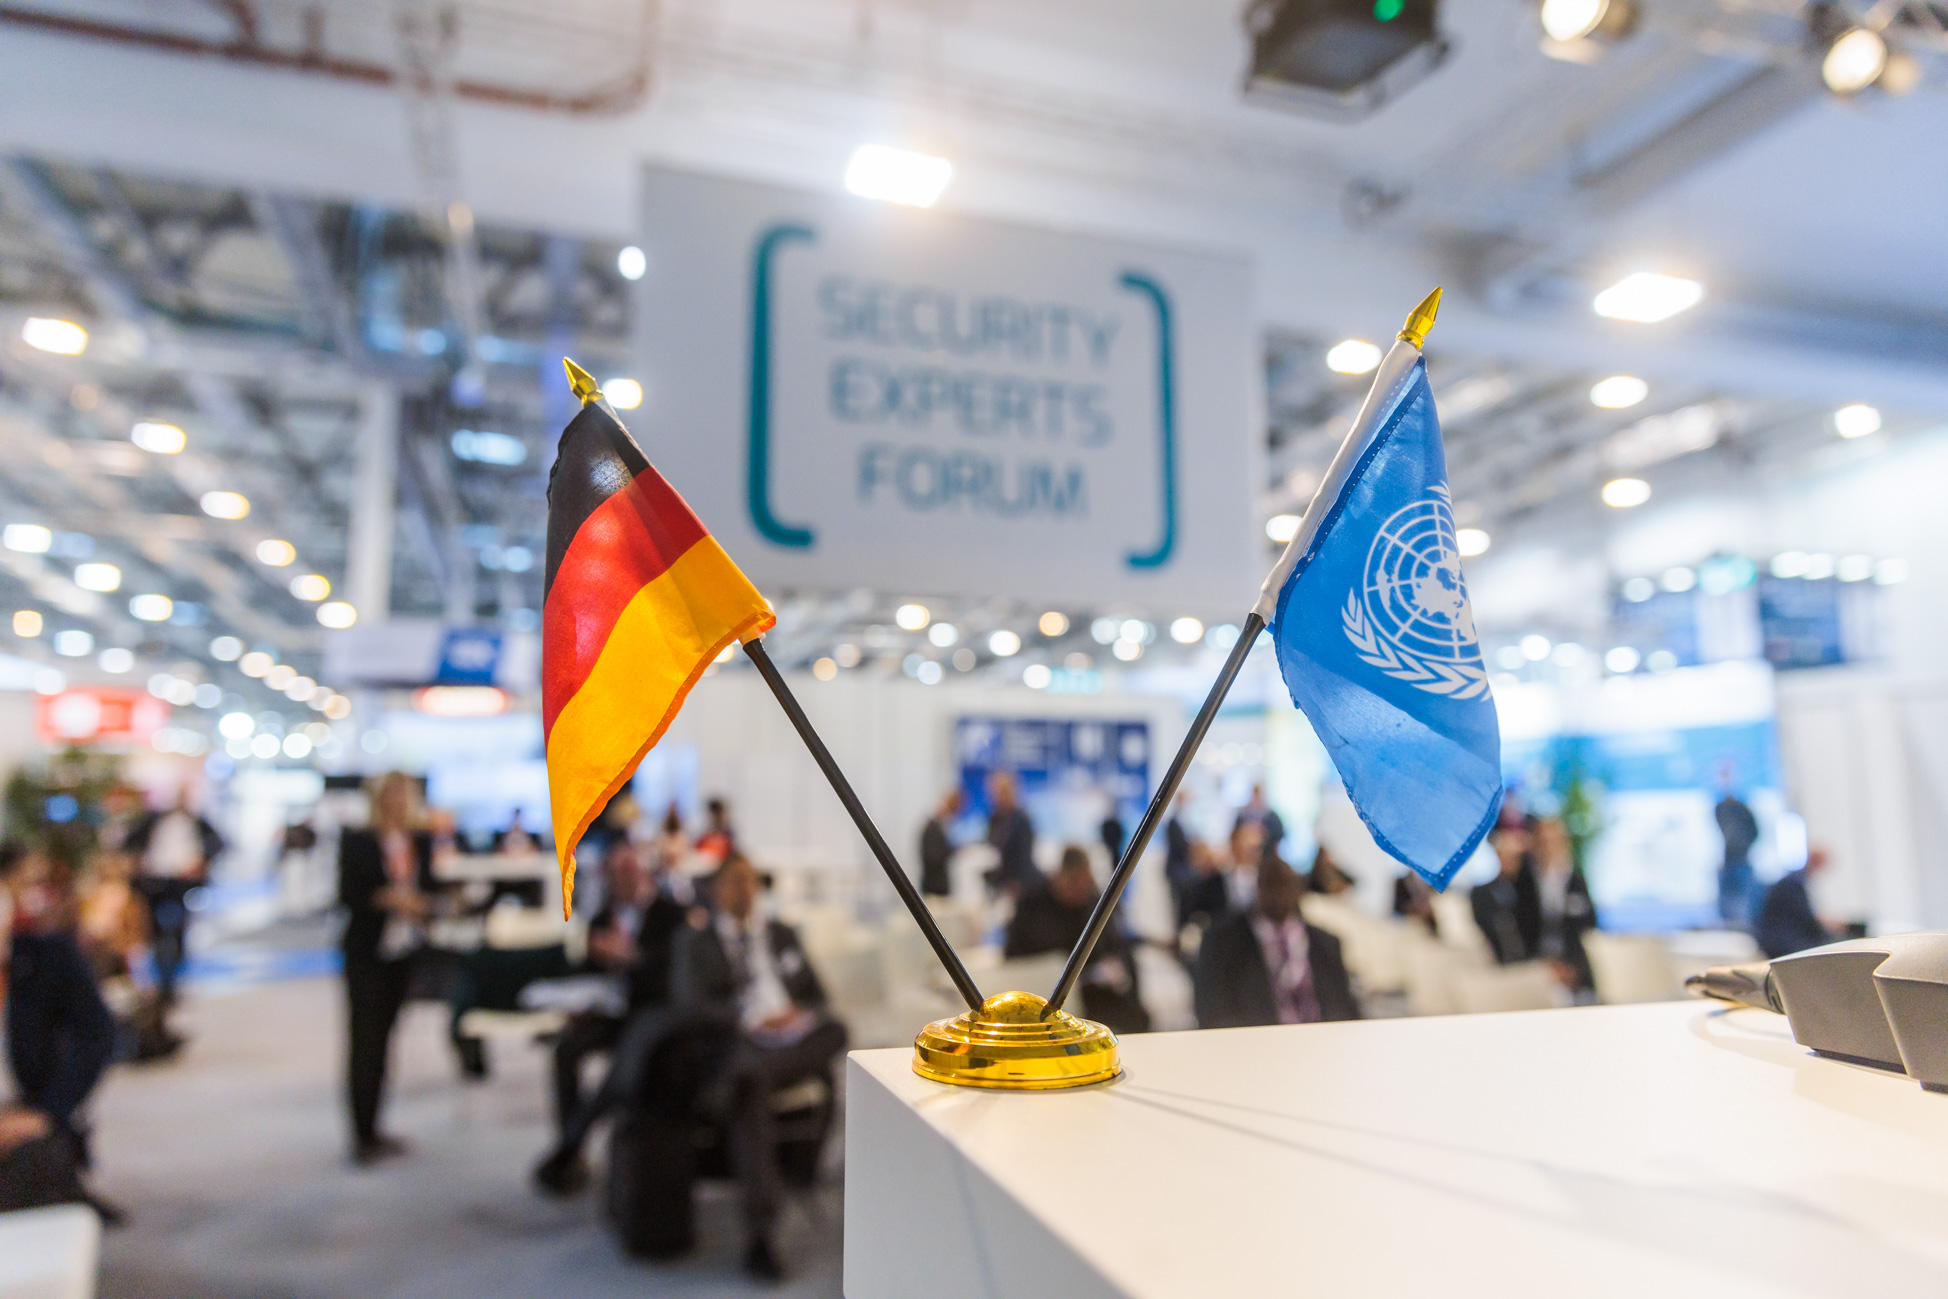 
			security experts forum - UN Delegation
		